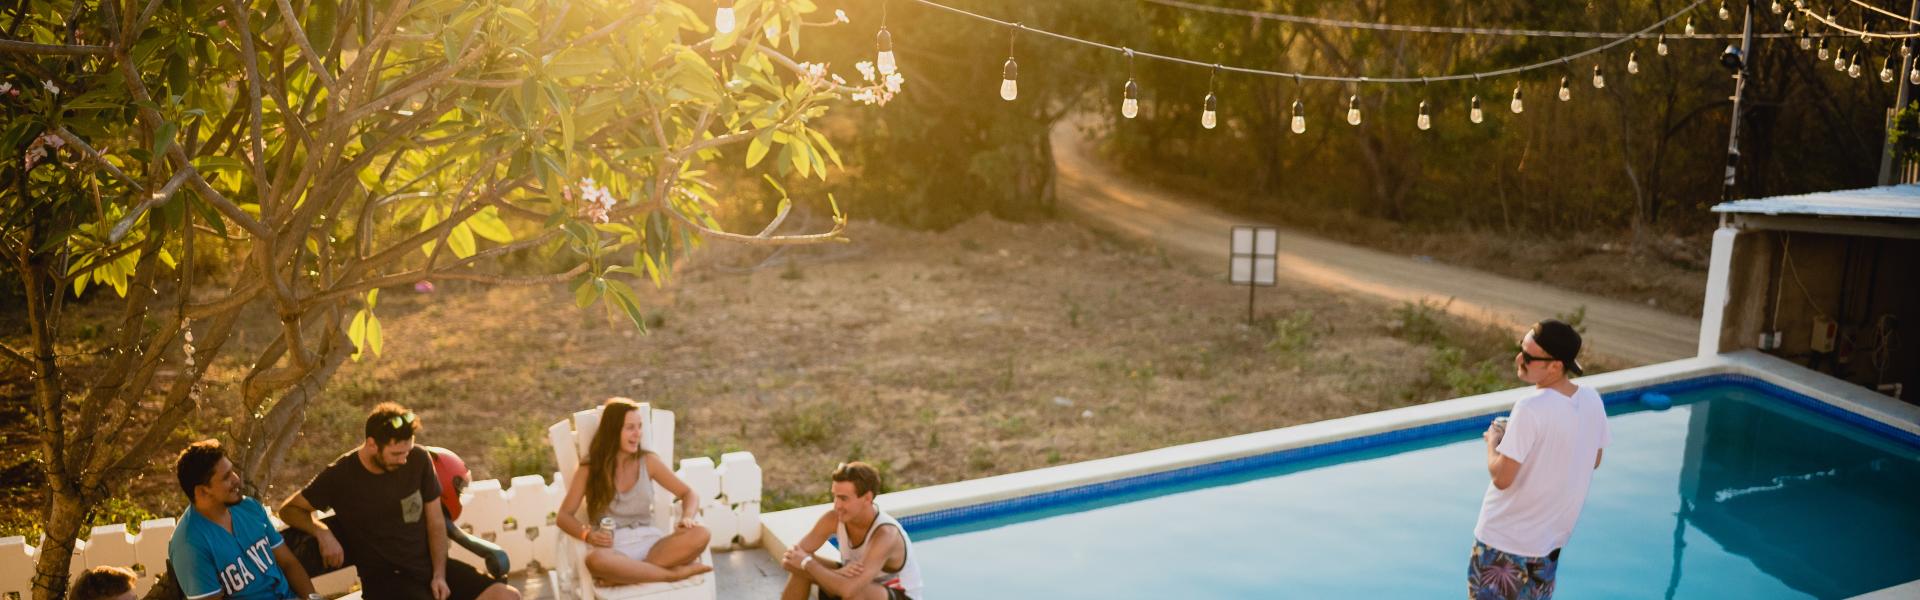 Ferienhaus mit Pool in Süddalmatien - Casamundo